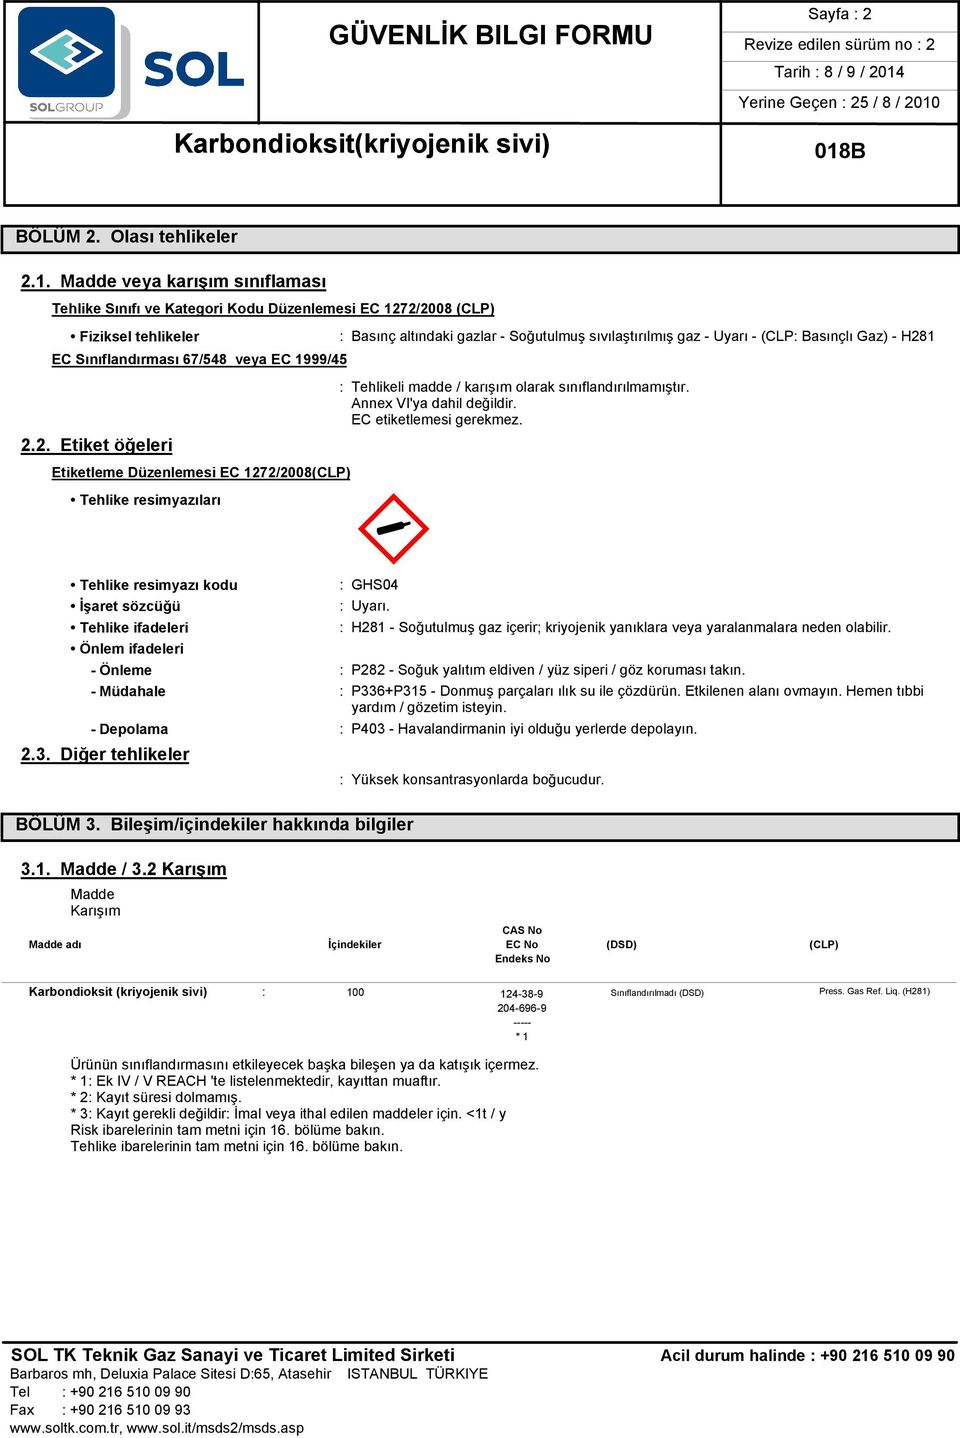 sıvılaştırılmış gaz - Uyarı - (CLP: Basınçlı Gaz) - H281 : Tehlikeli madde / karışım olarak sınıflandırılmamıştır. Annex VI'ya dahil değildir. EC etiketlemesi gerekmez. M«: GHS04 : Uyarı.